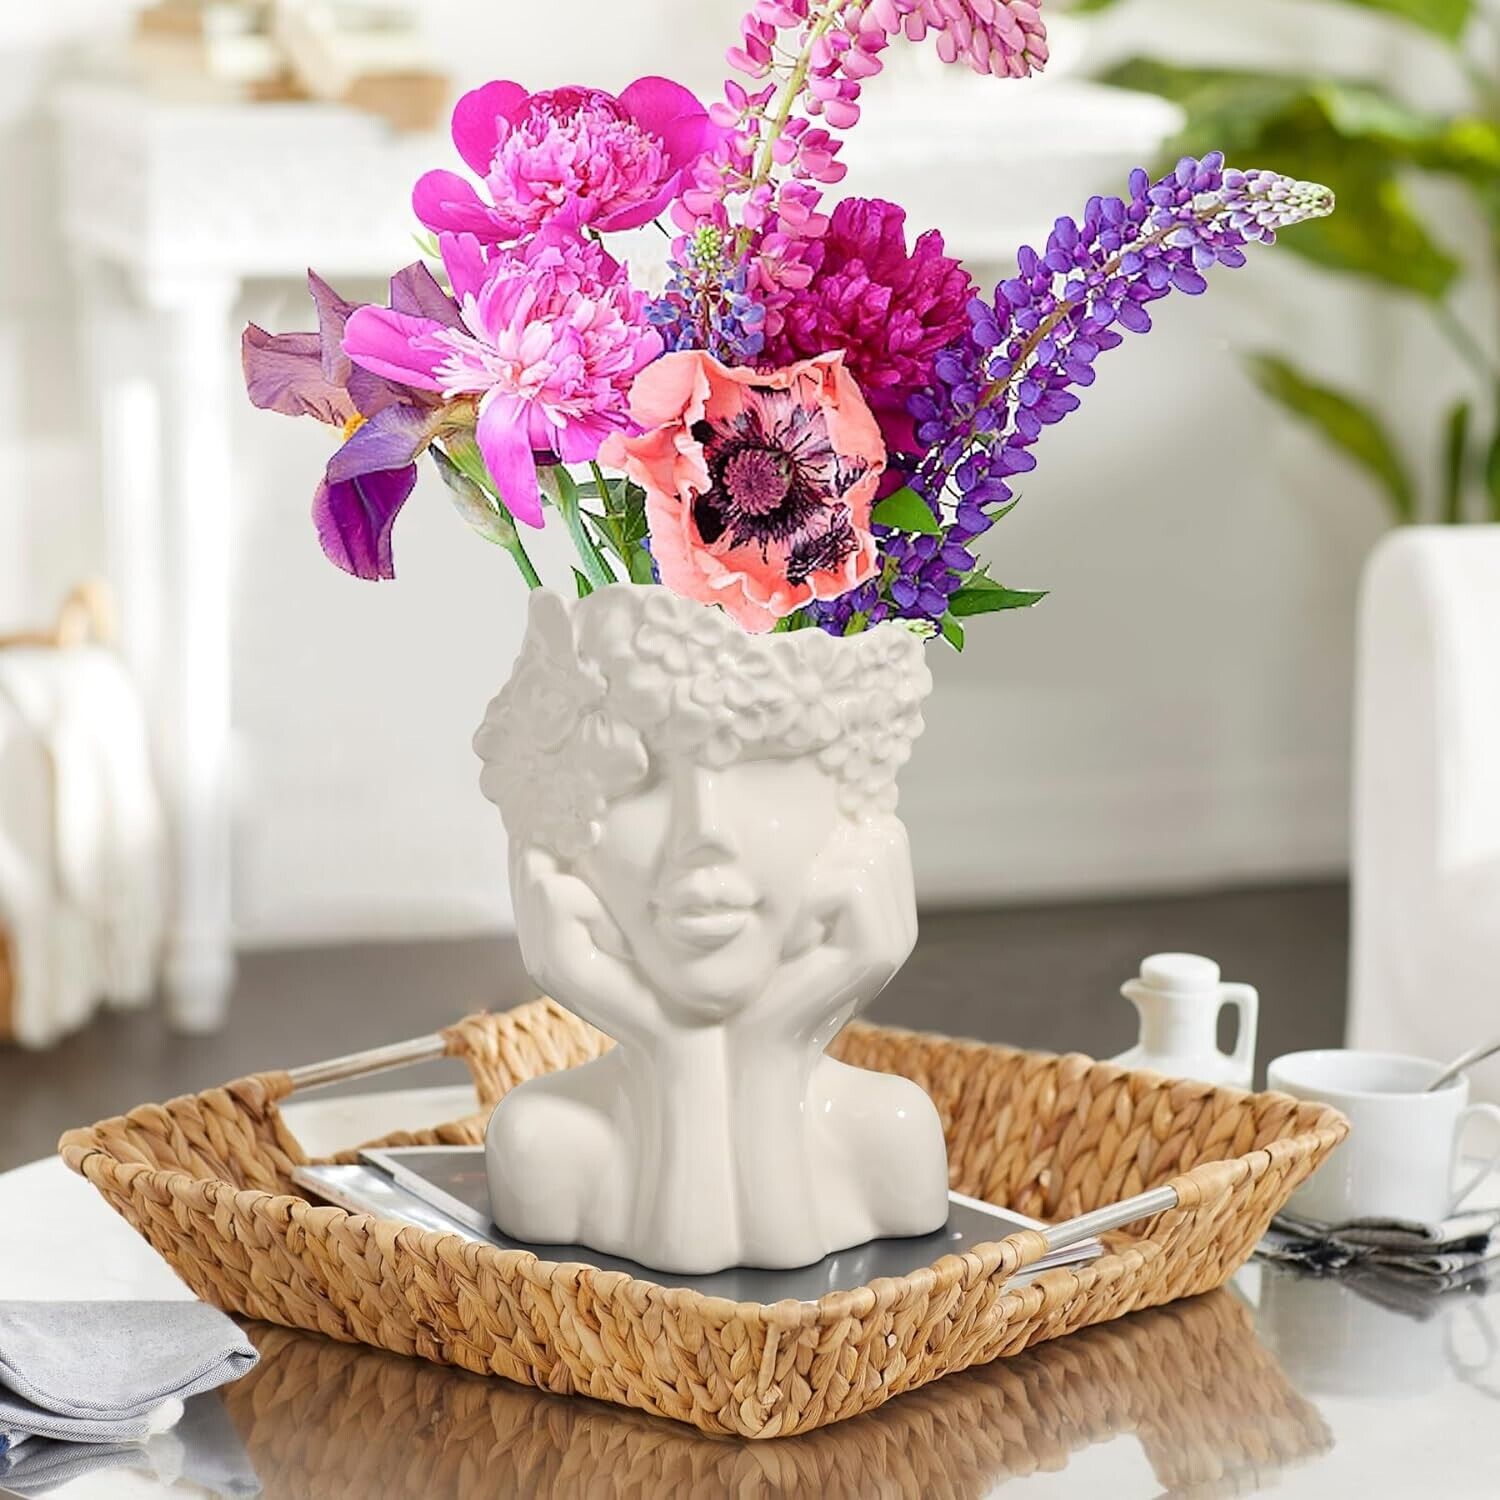 ComSaf White Ceramic Flower Vase for Decor Modern Style Female Form Face Vase